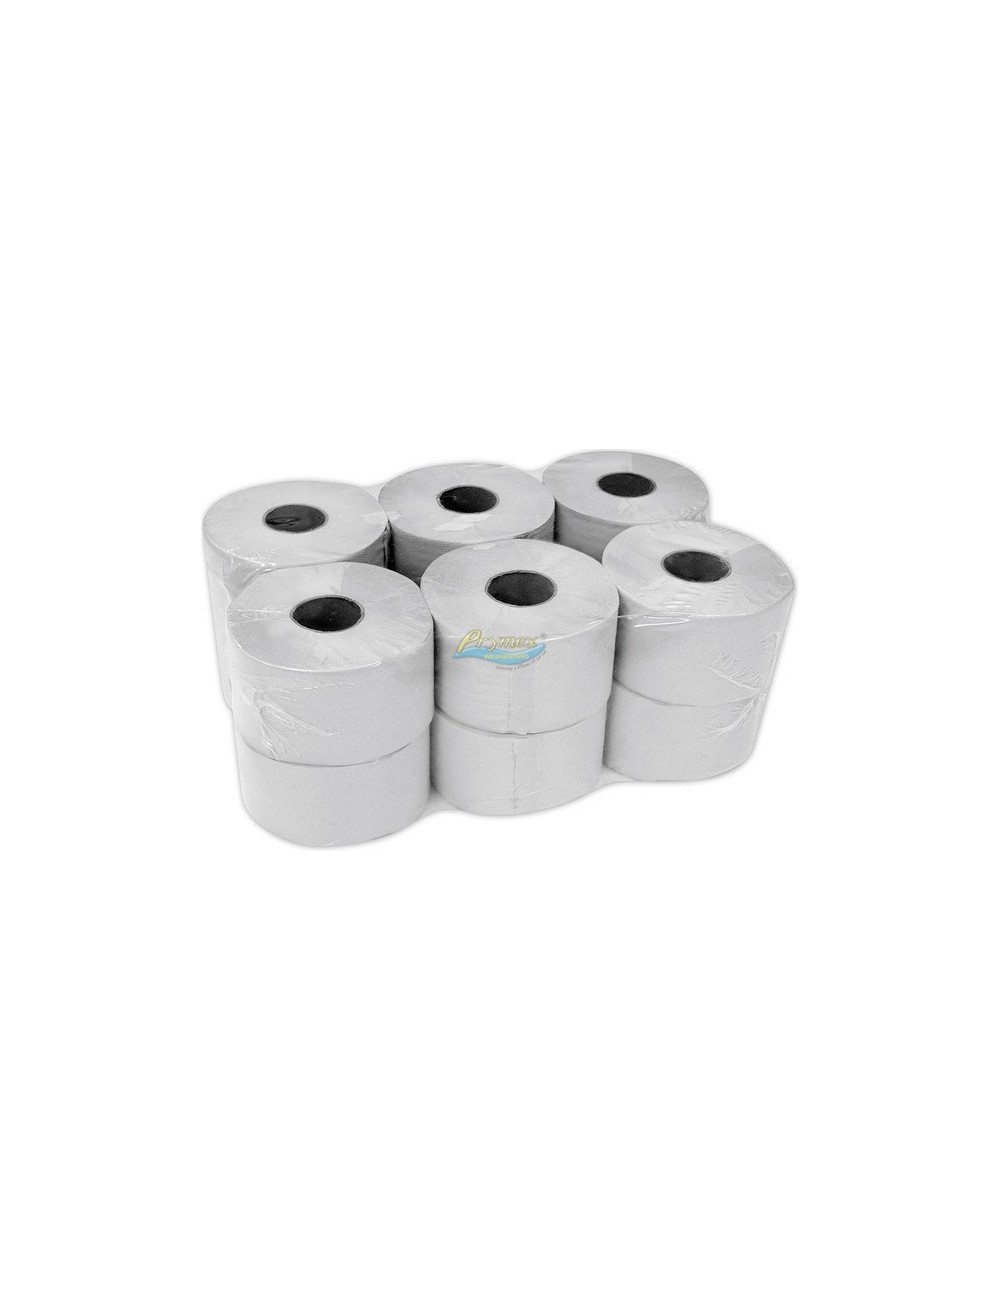 Clarina Papier Toaletowy Szary 2-Warstwowy Duży (12 rolek x 0,42 kg)